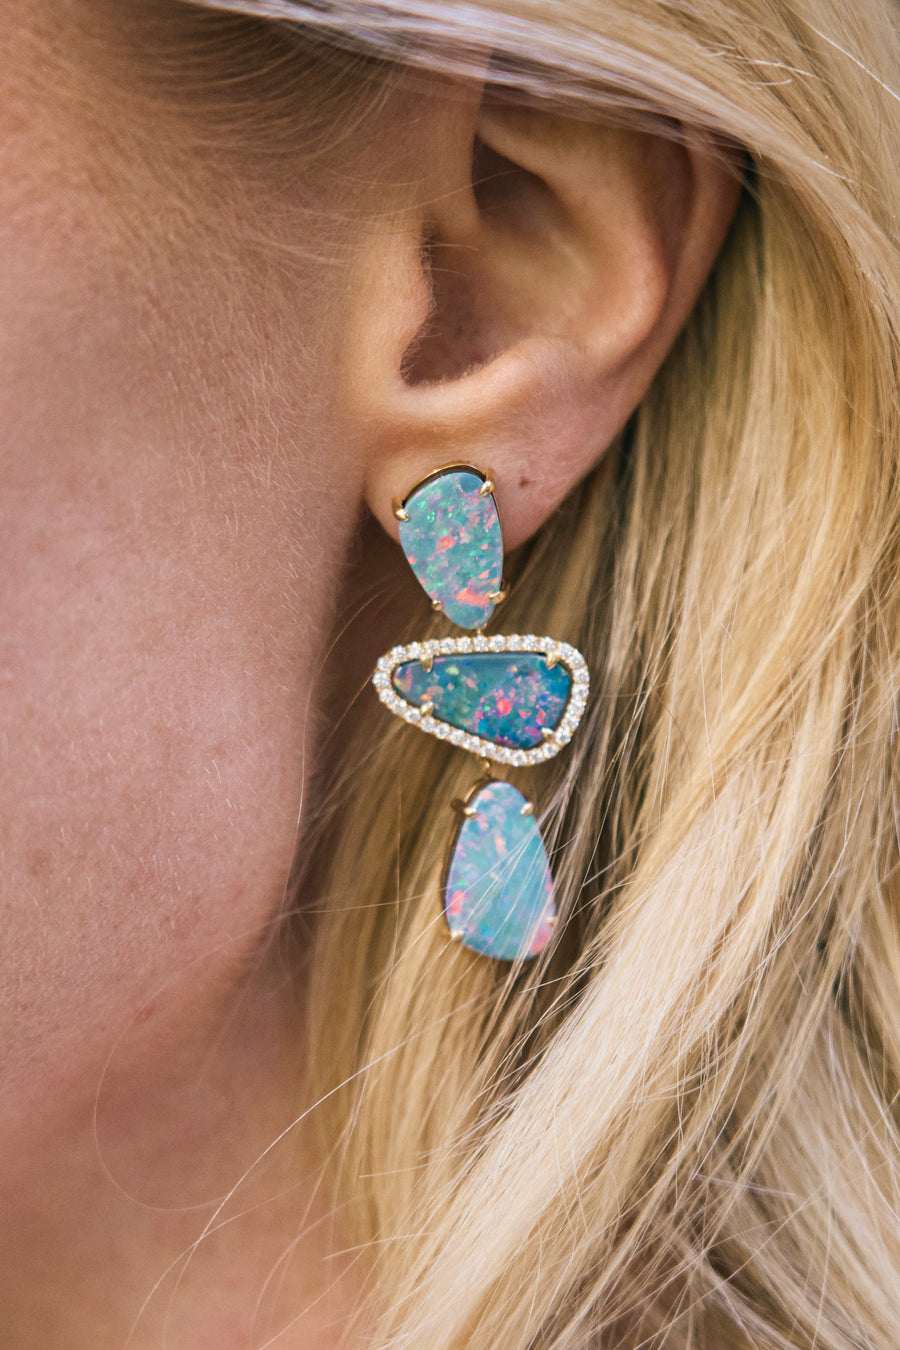 Pastel Opal and Diamond Drop Earrings